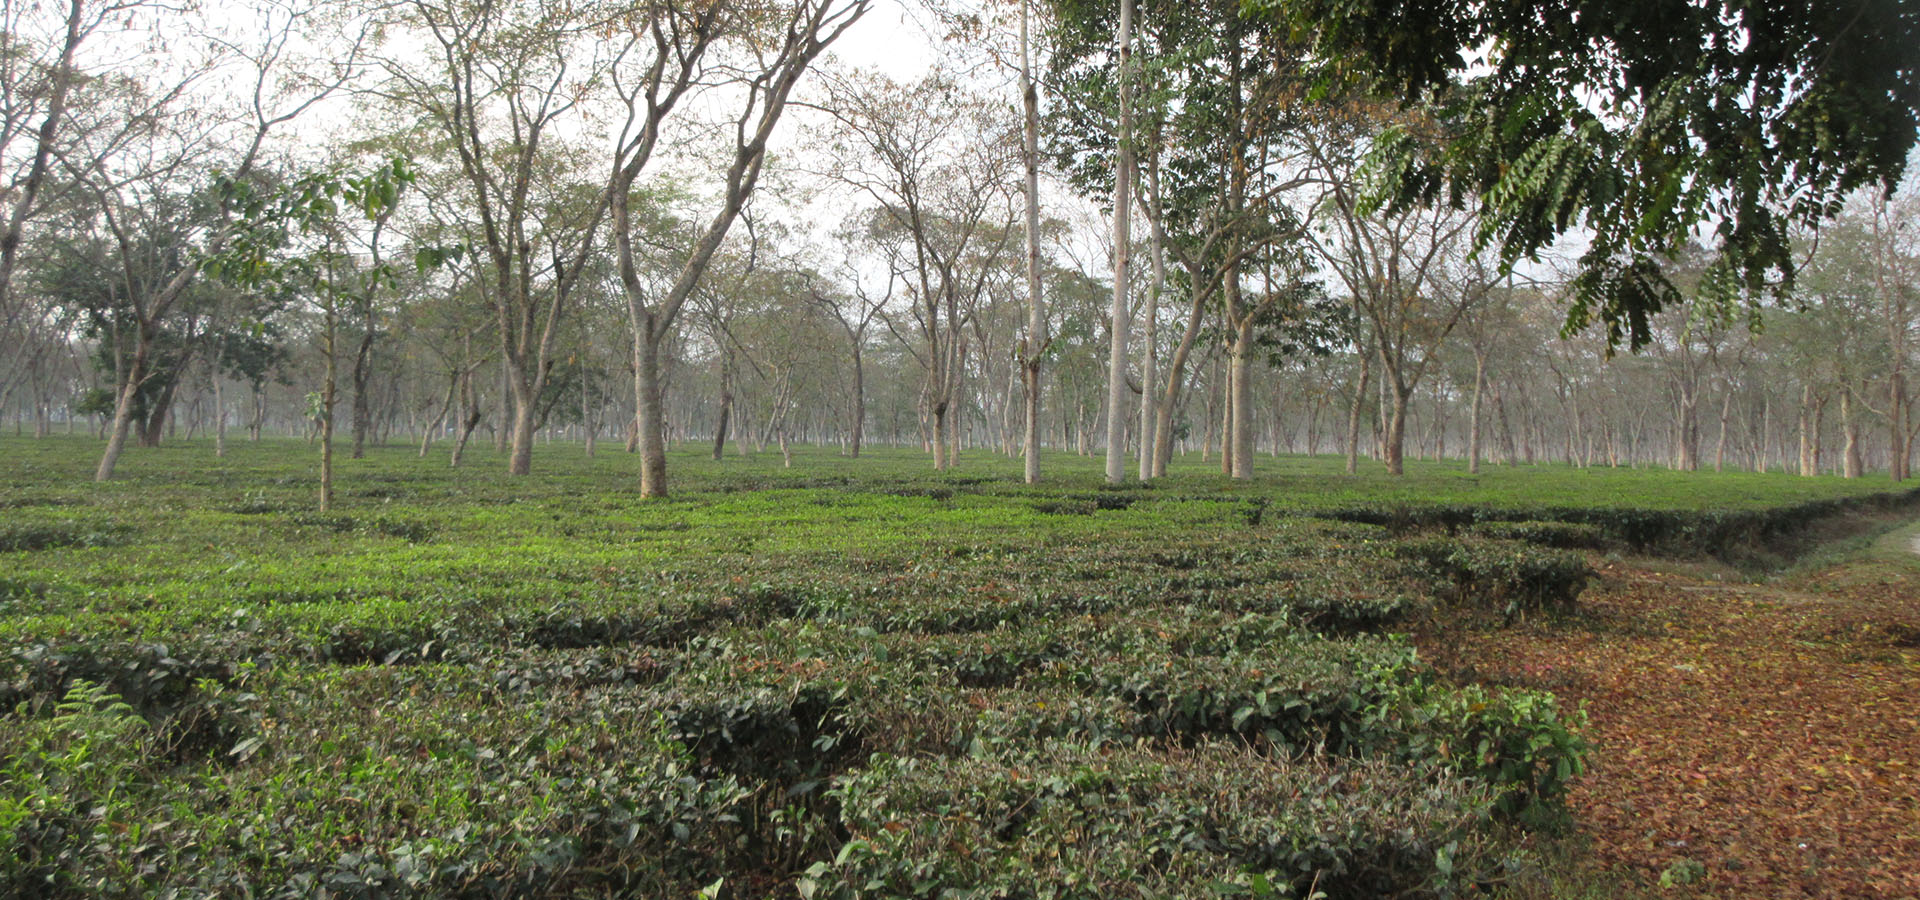 NEPAL – Llevando una educación de calidad a los hijos de los trabajadores del té